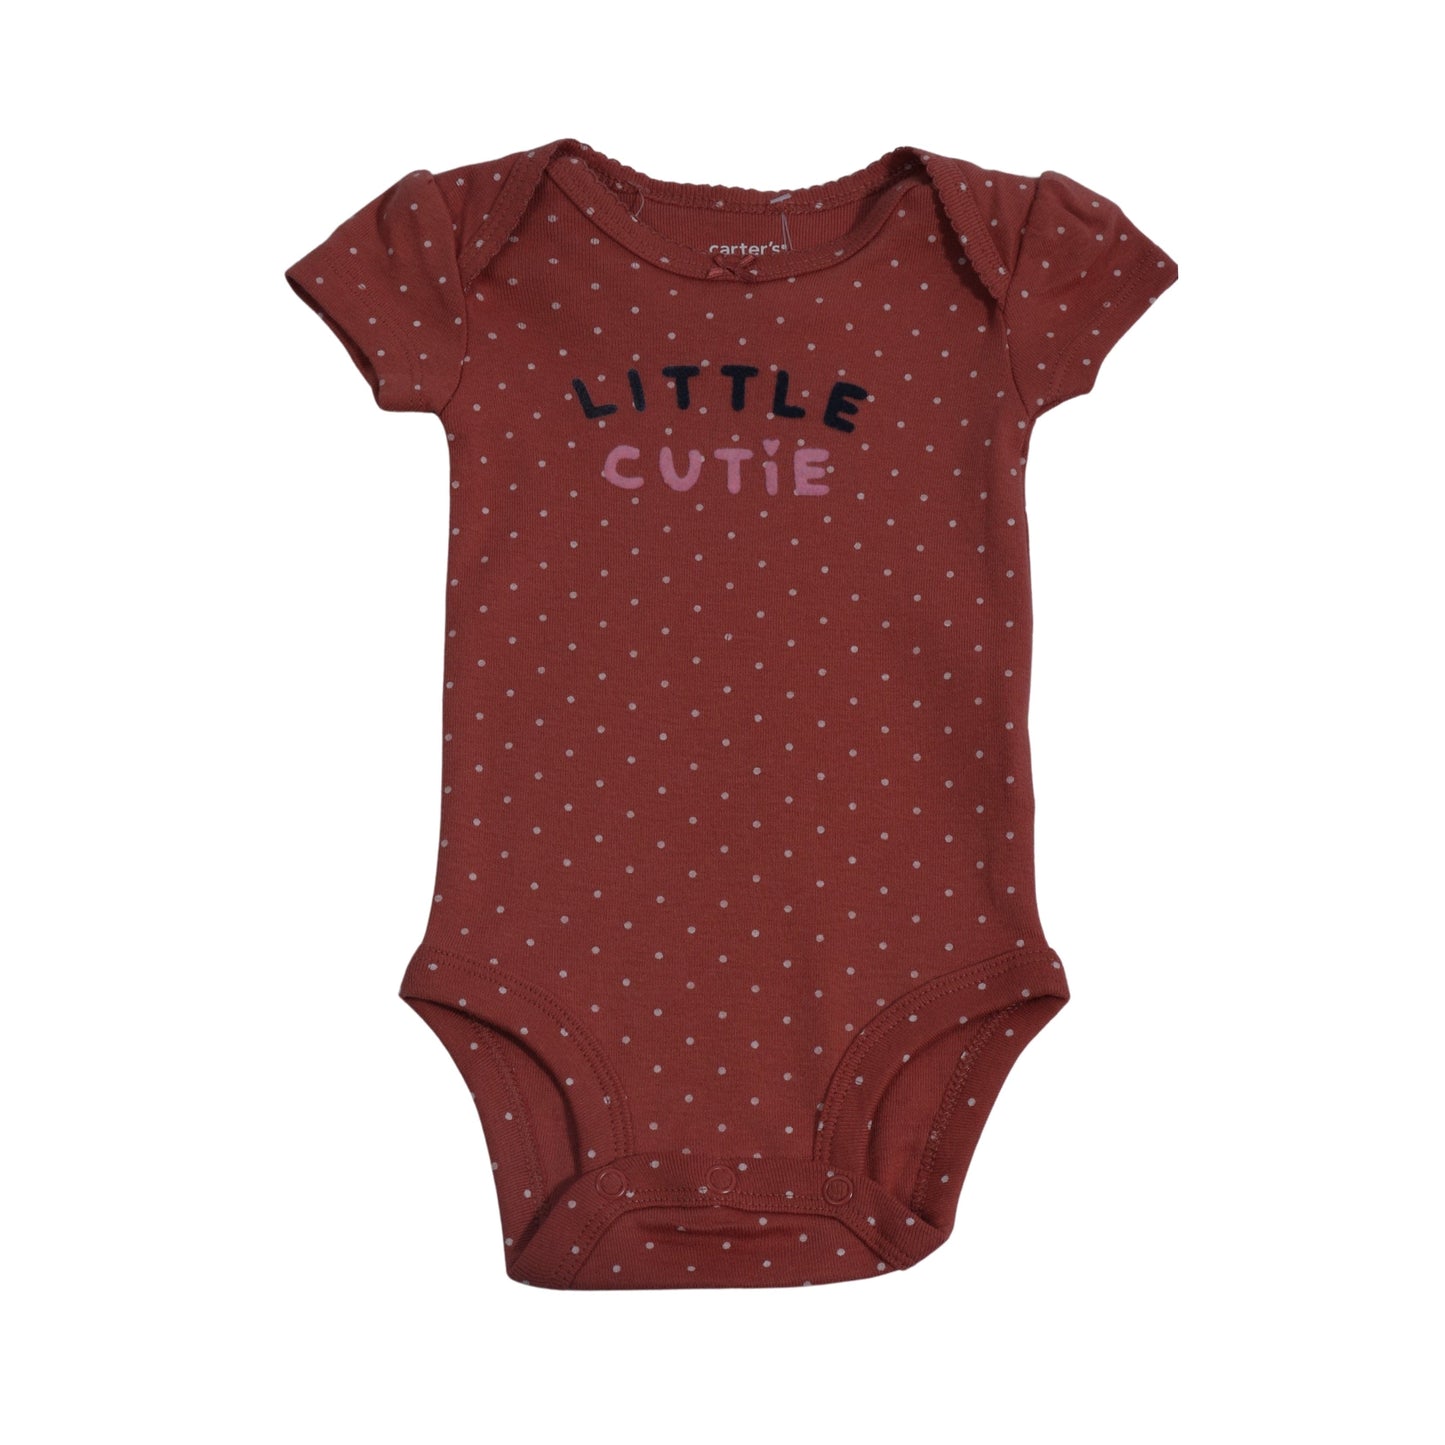 CARTER'S Baby Girl CARTER'S - Baby - Front Little Cutie 3D Print Bodysuit